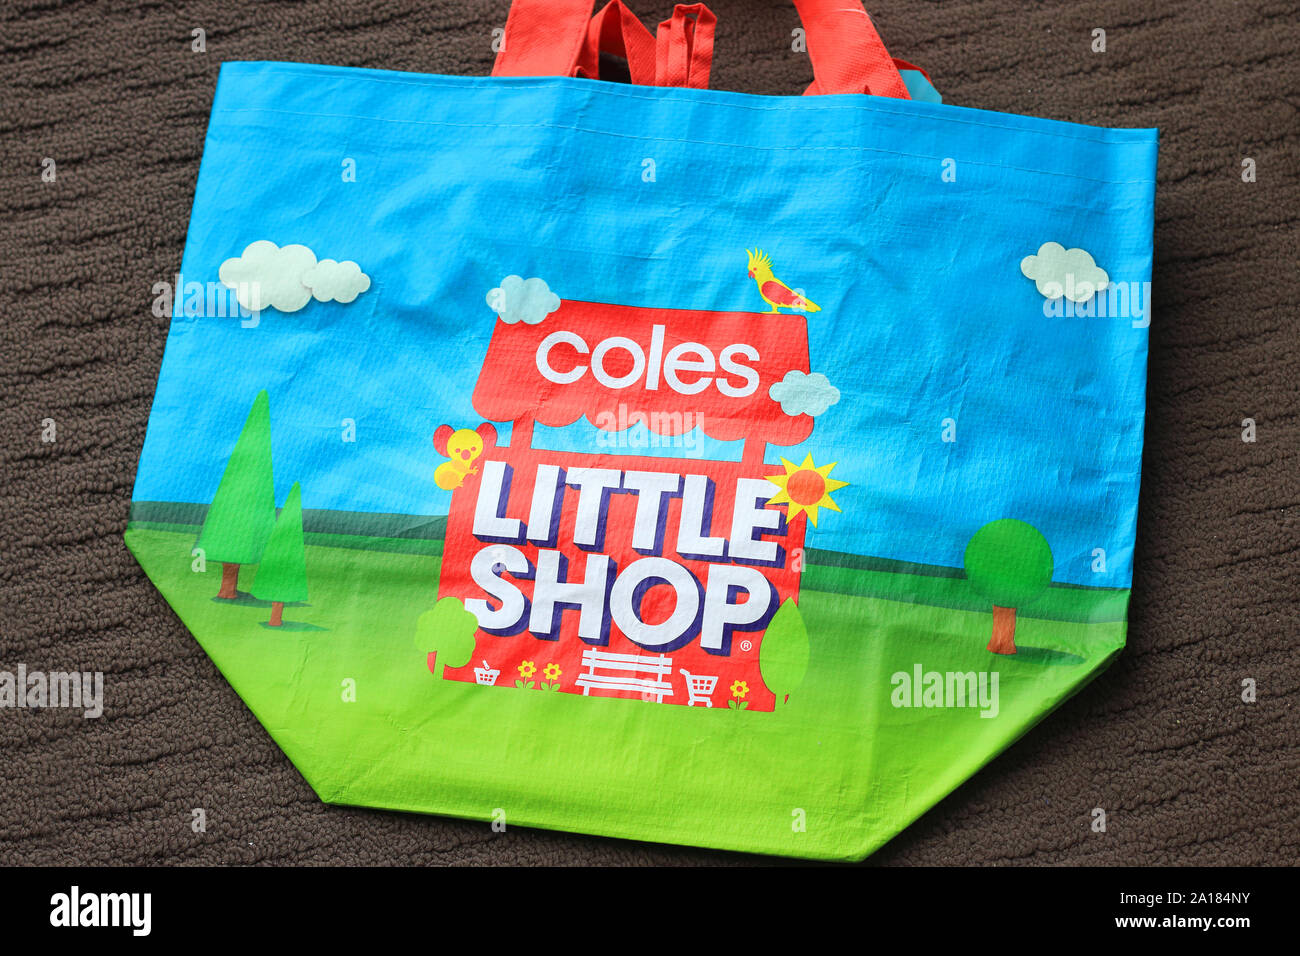 Coles Little Shop 2 Mini de collection Banque D'Images